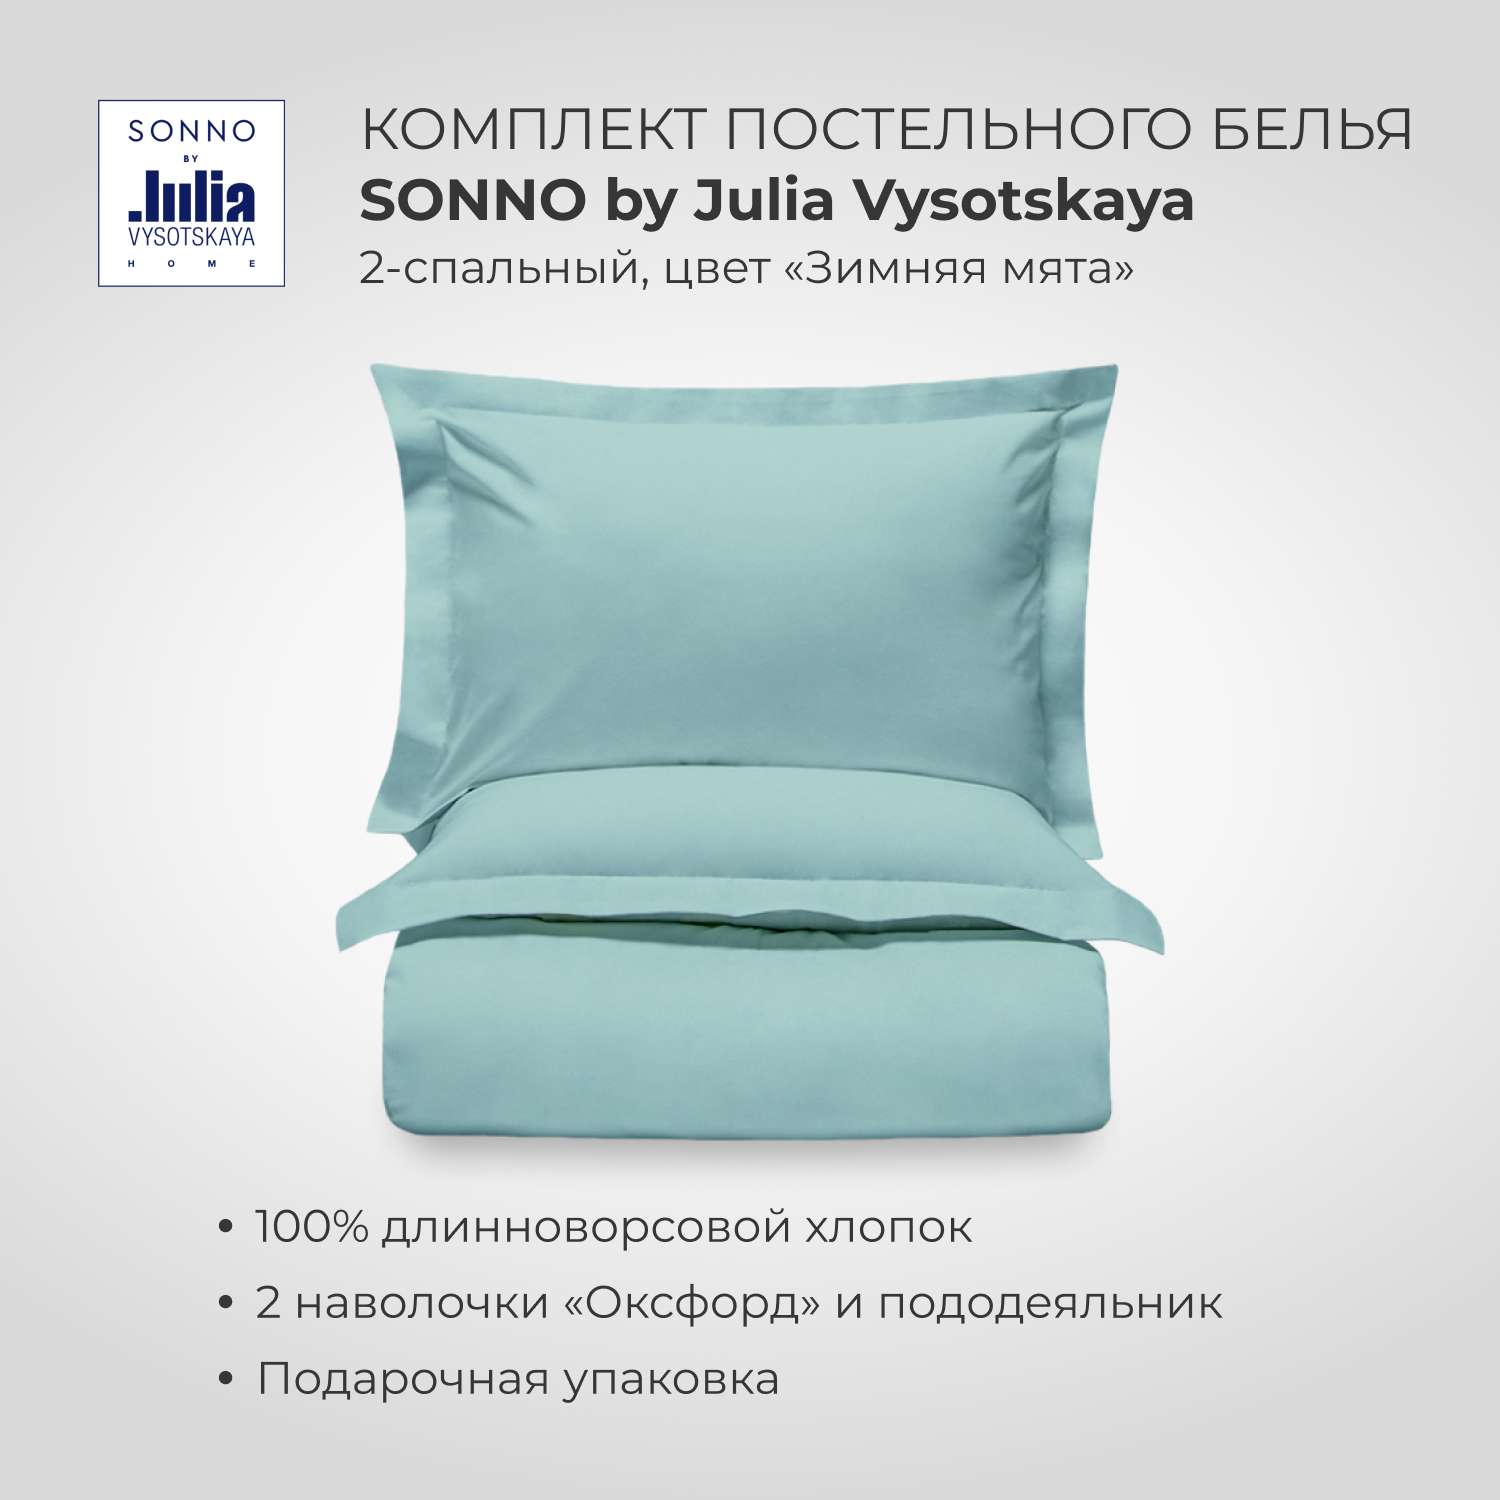 Комплект постельного белья SONNO by Julia Vysotskaya 2-спальный цвет Зимняя мята - фото 1